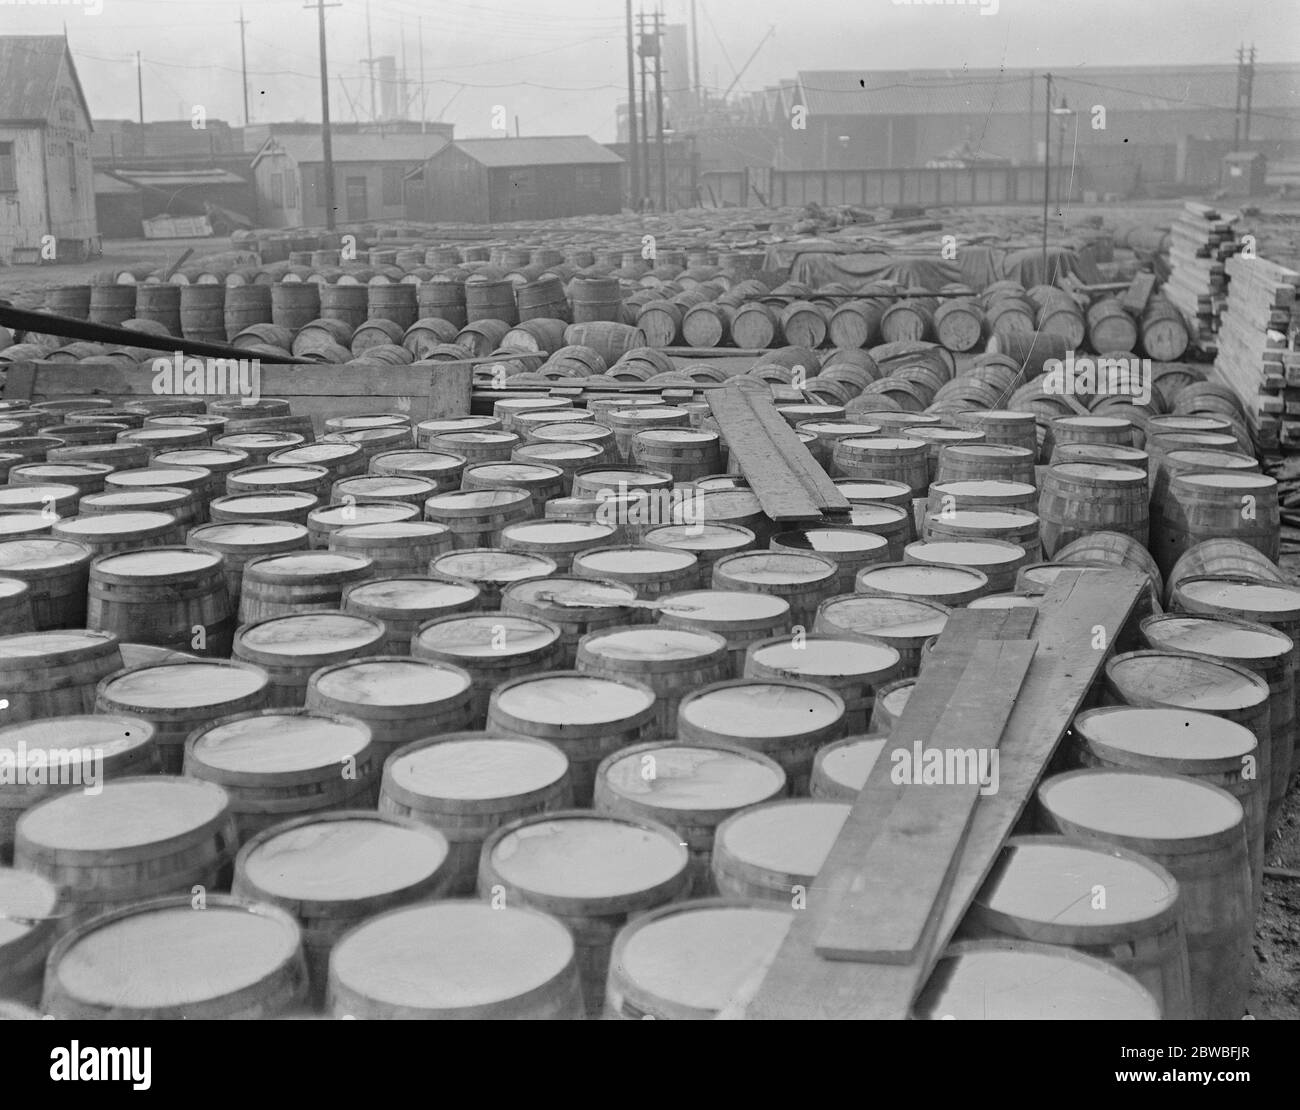 5 , 000 Fässer Sirup in Surrey Docks gehalten Es wird behauptet, dass 5 , 000 Fässer mit Goldsirup, die vor 2 Jahren angekommen sind noch nicht bewegt 21 April 1920 Stockfoto